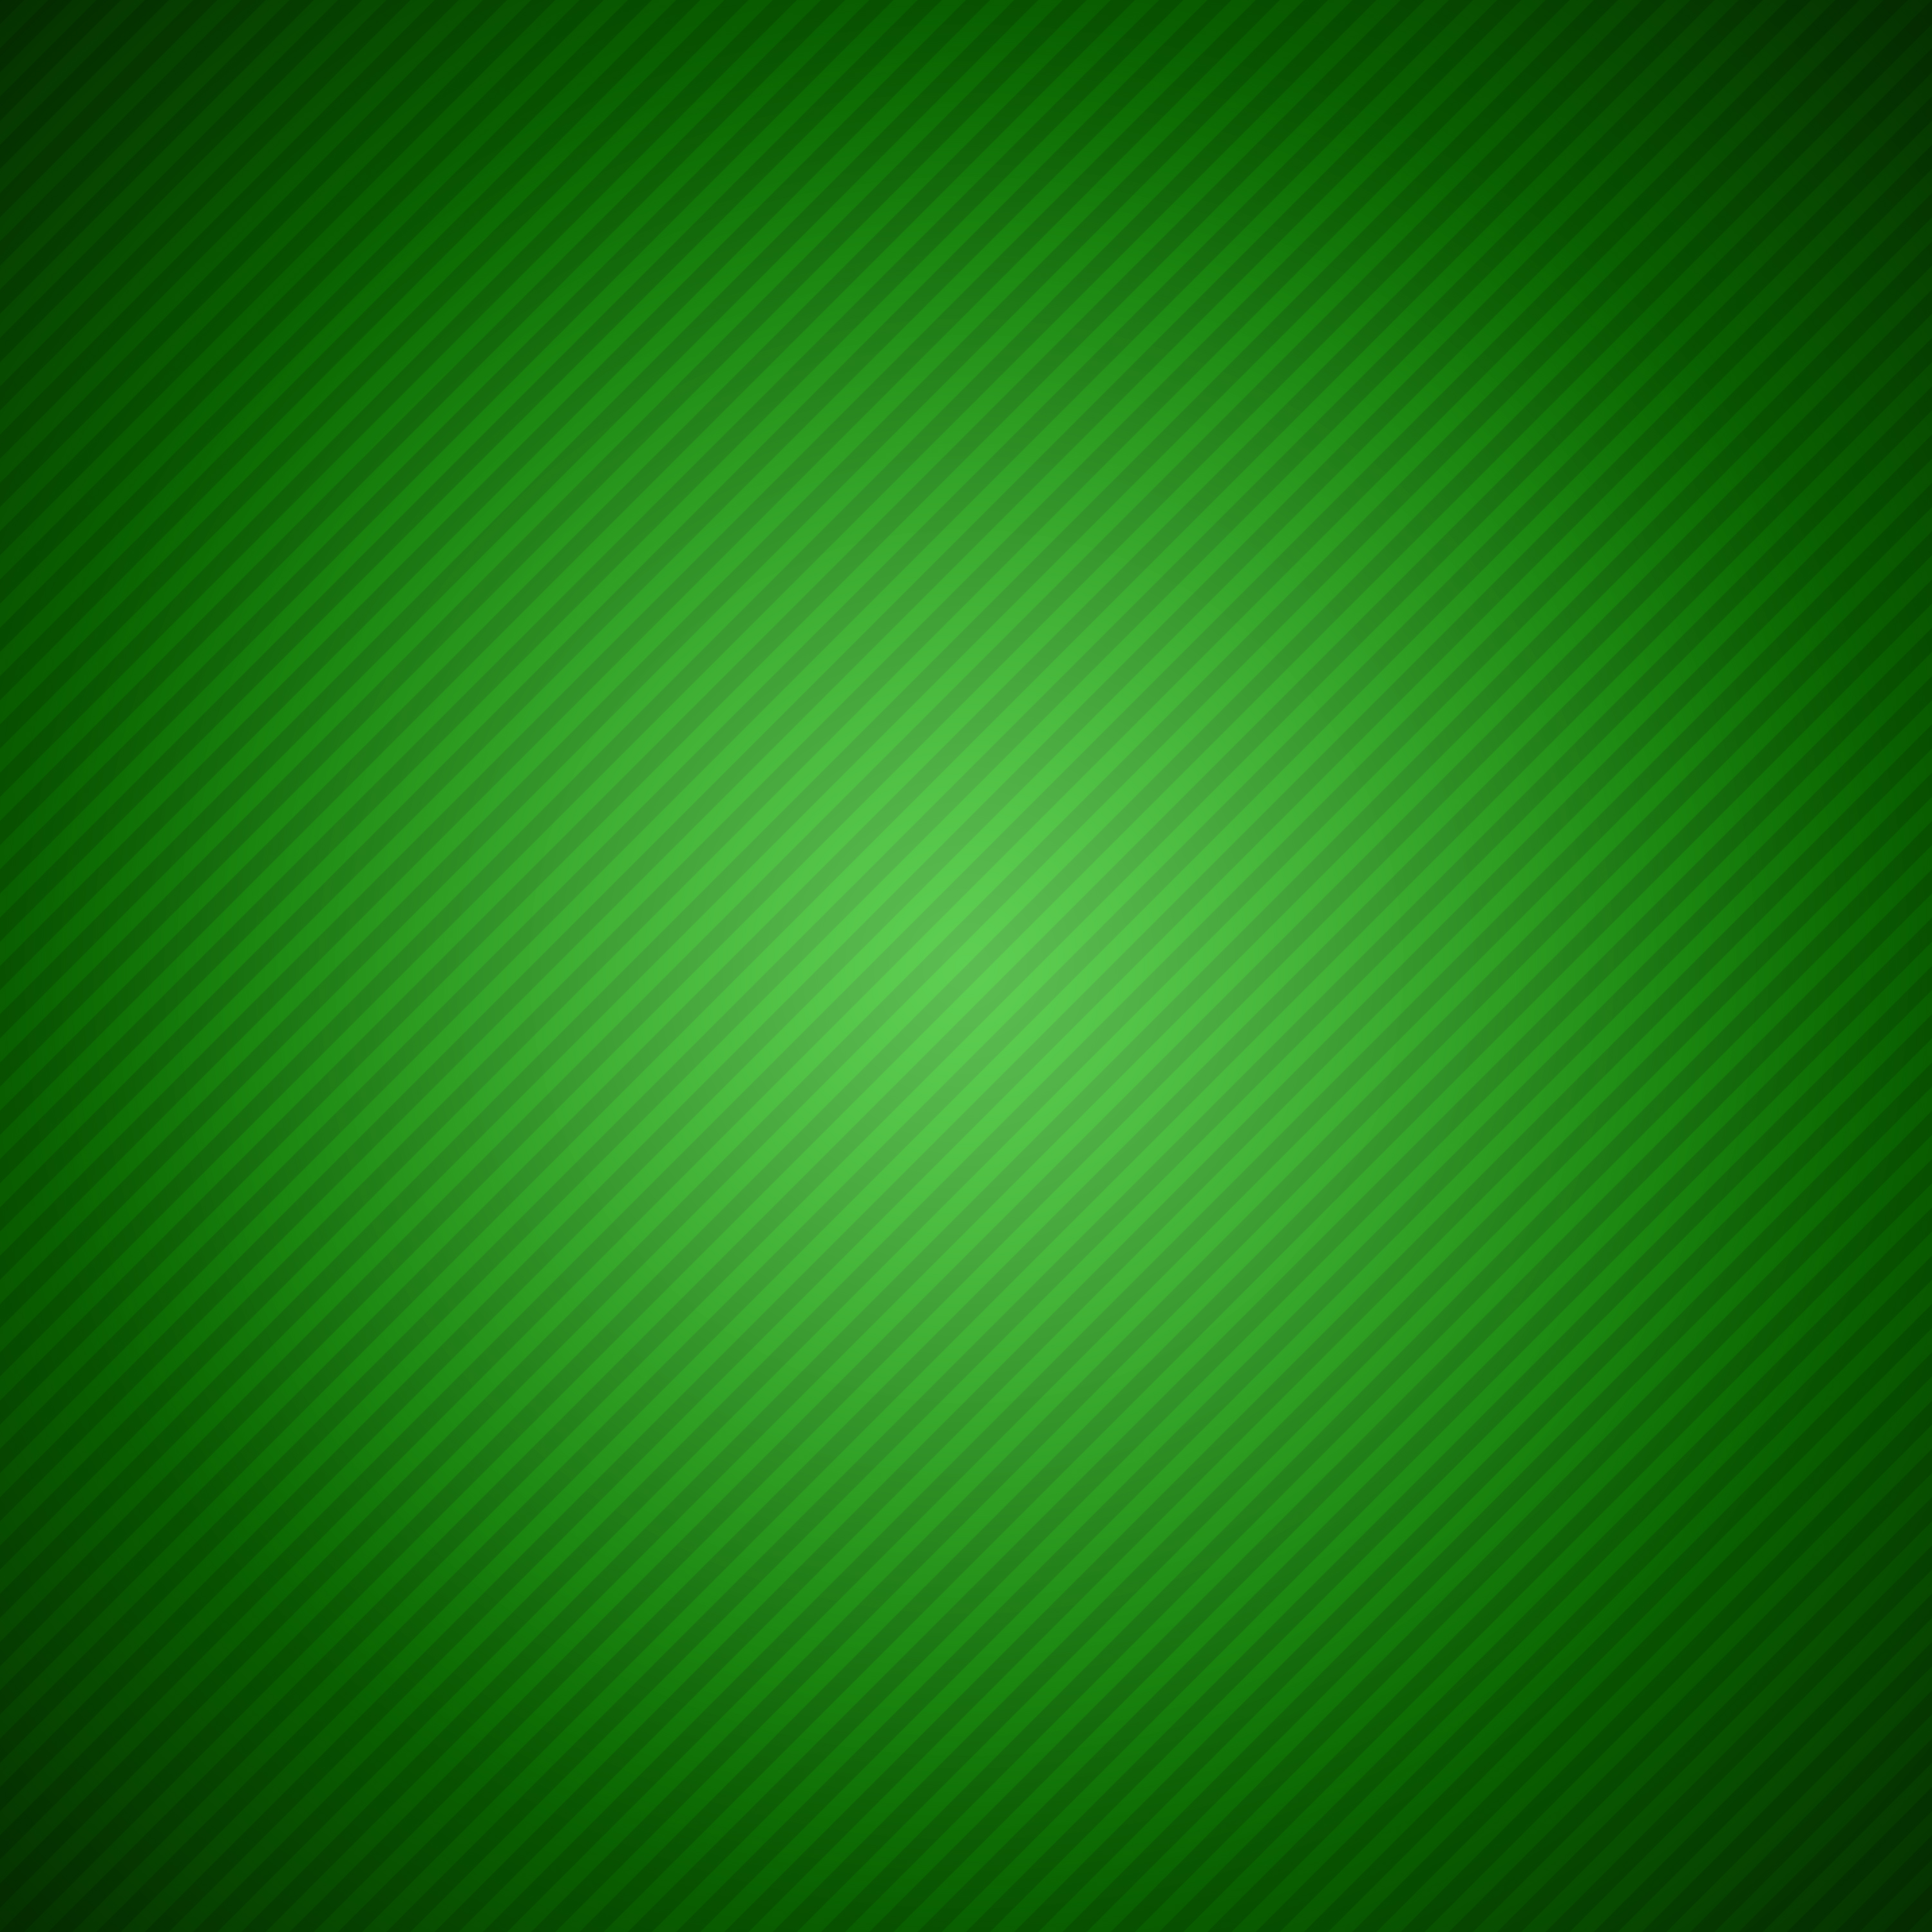 Diagonal Left - Green.jpg